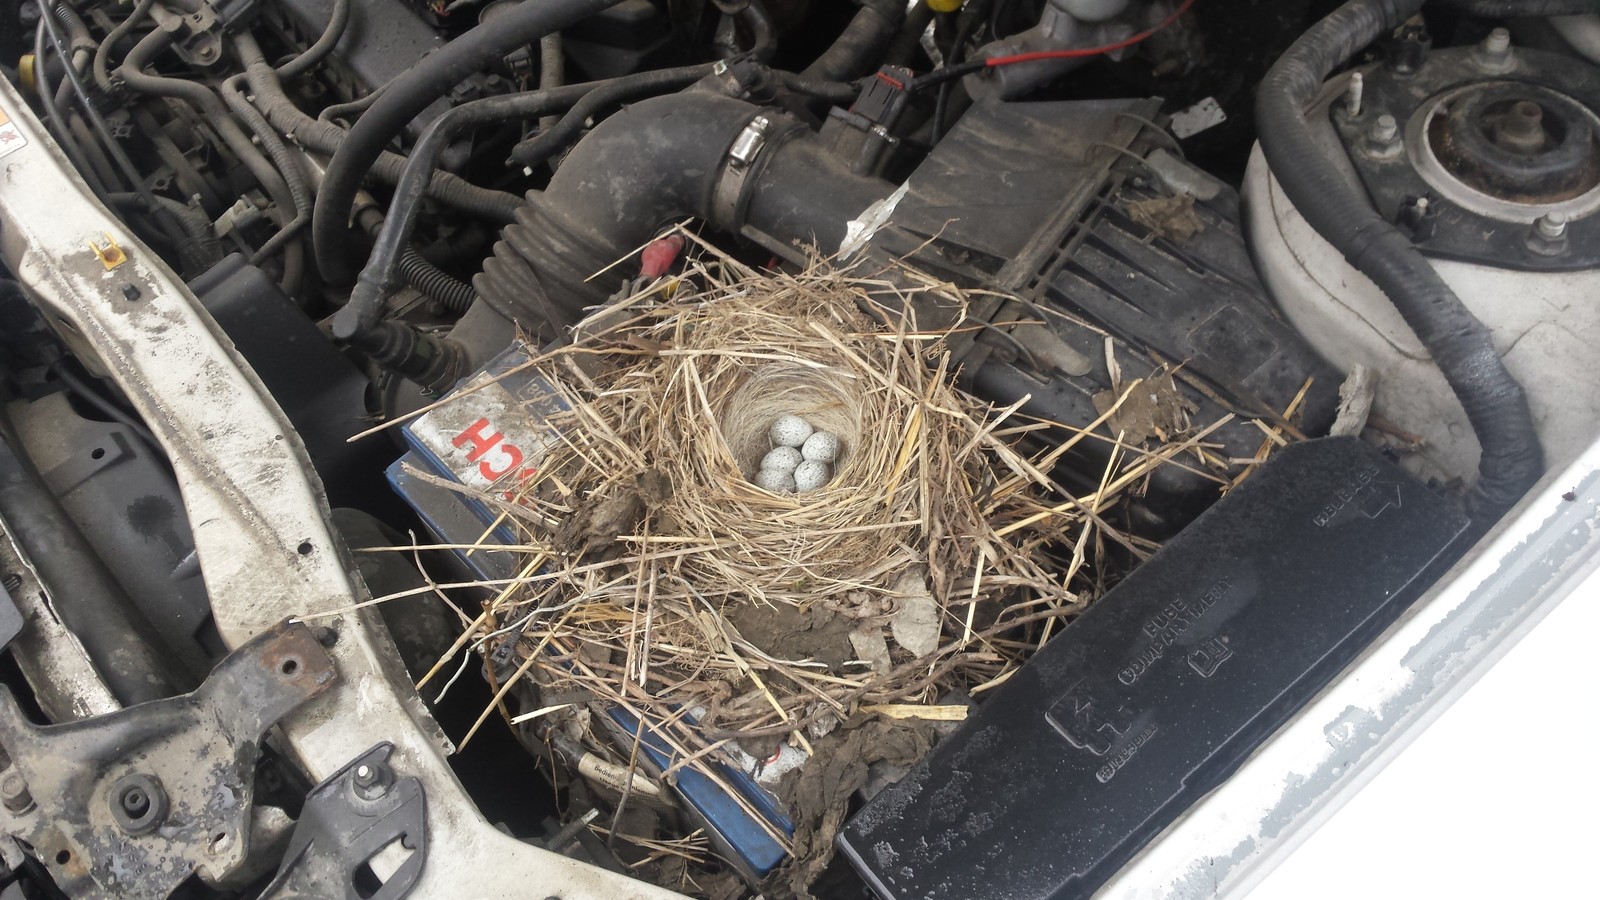 Nest - My, Car service, Nest